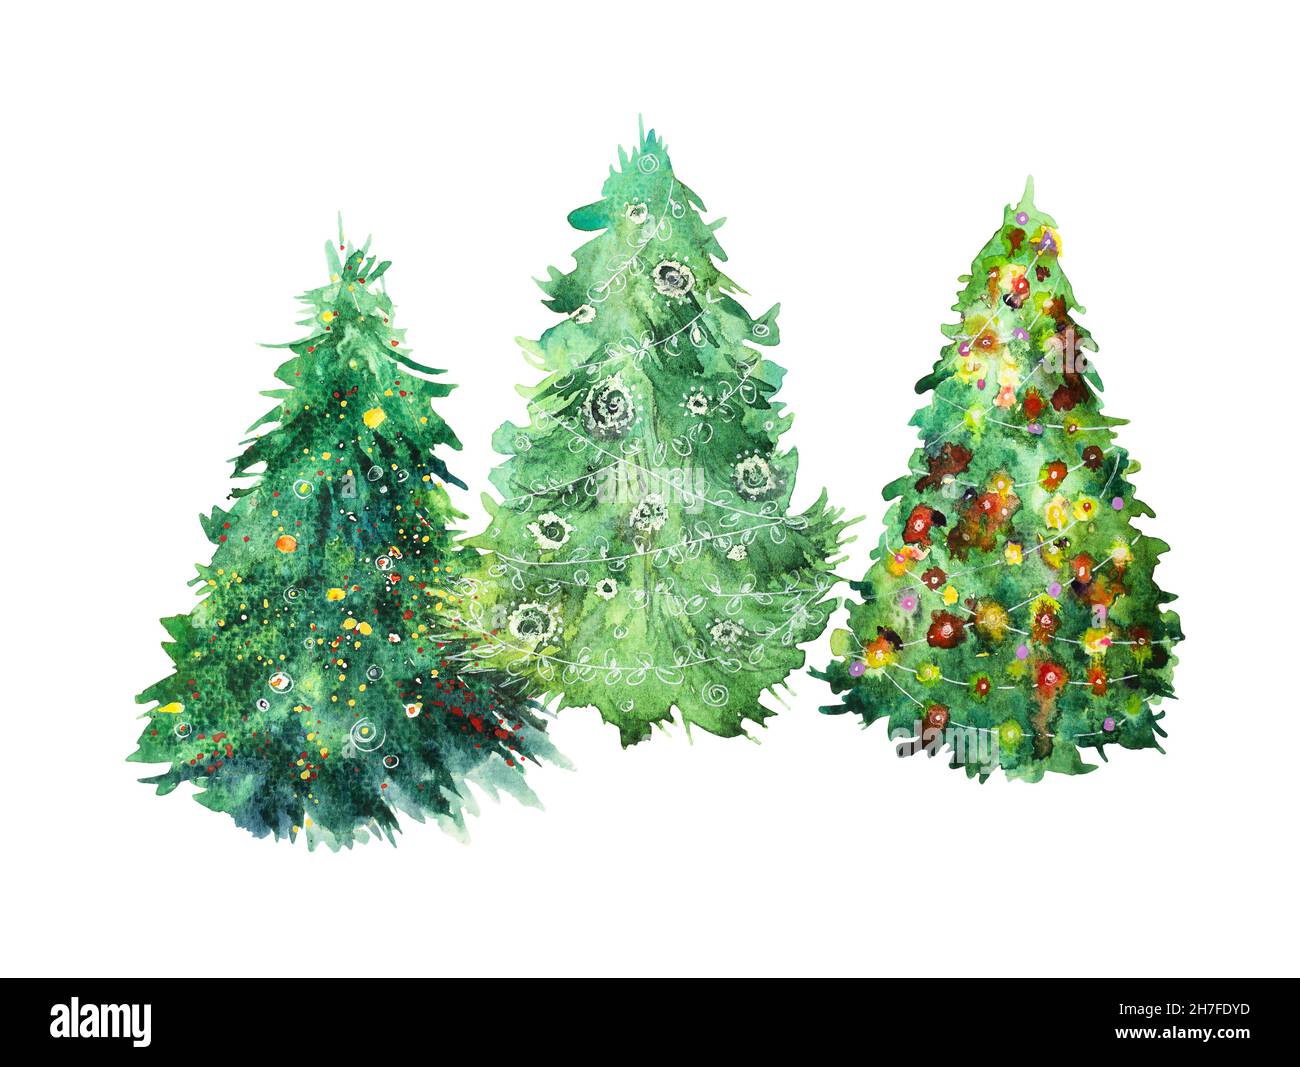 Trois arbres de Noël avec décoration de Noël aquarelle isolée sur fond blanc Banque D'Images